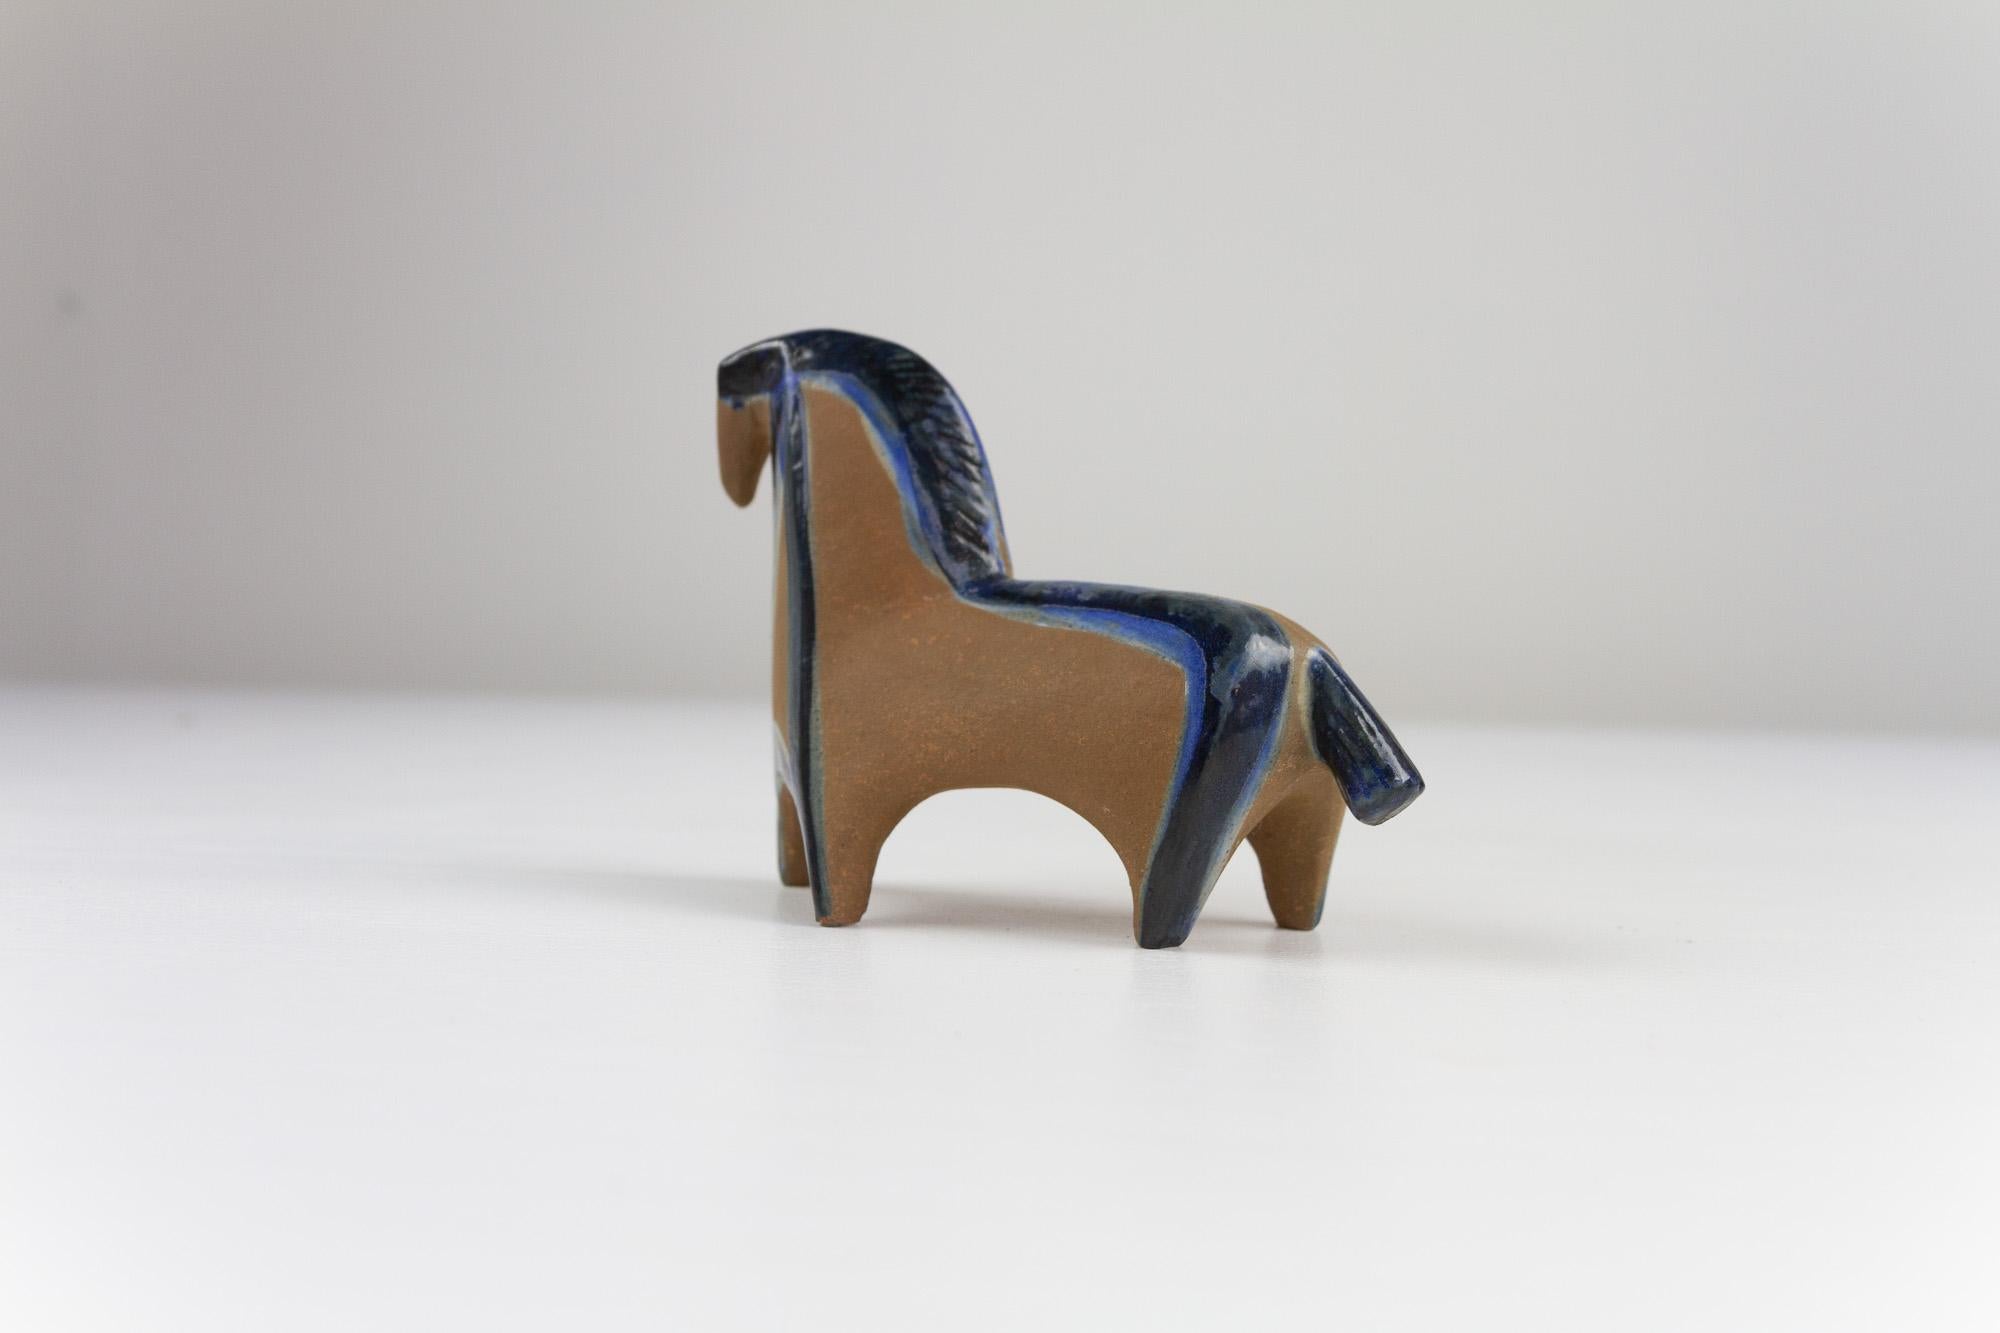 Schwedisches Vintage-Steinzeugpferd von Lisa Larson für Gustavsberg, 1950er Jahre.

Diese kleine skandinavische, moderne Pferdefigur aus Keramik ist Teil der Small Zoo Kollektion. Die Serie besteht aus sieben Tierfiguren und wurde zwischen 1956 und